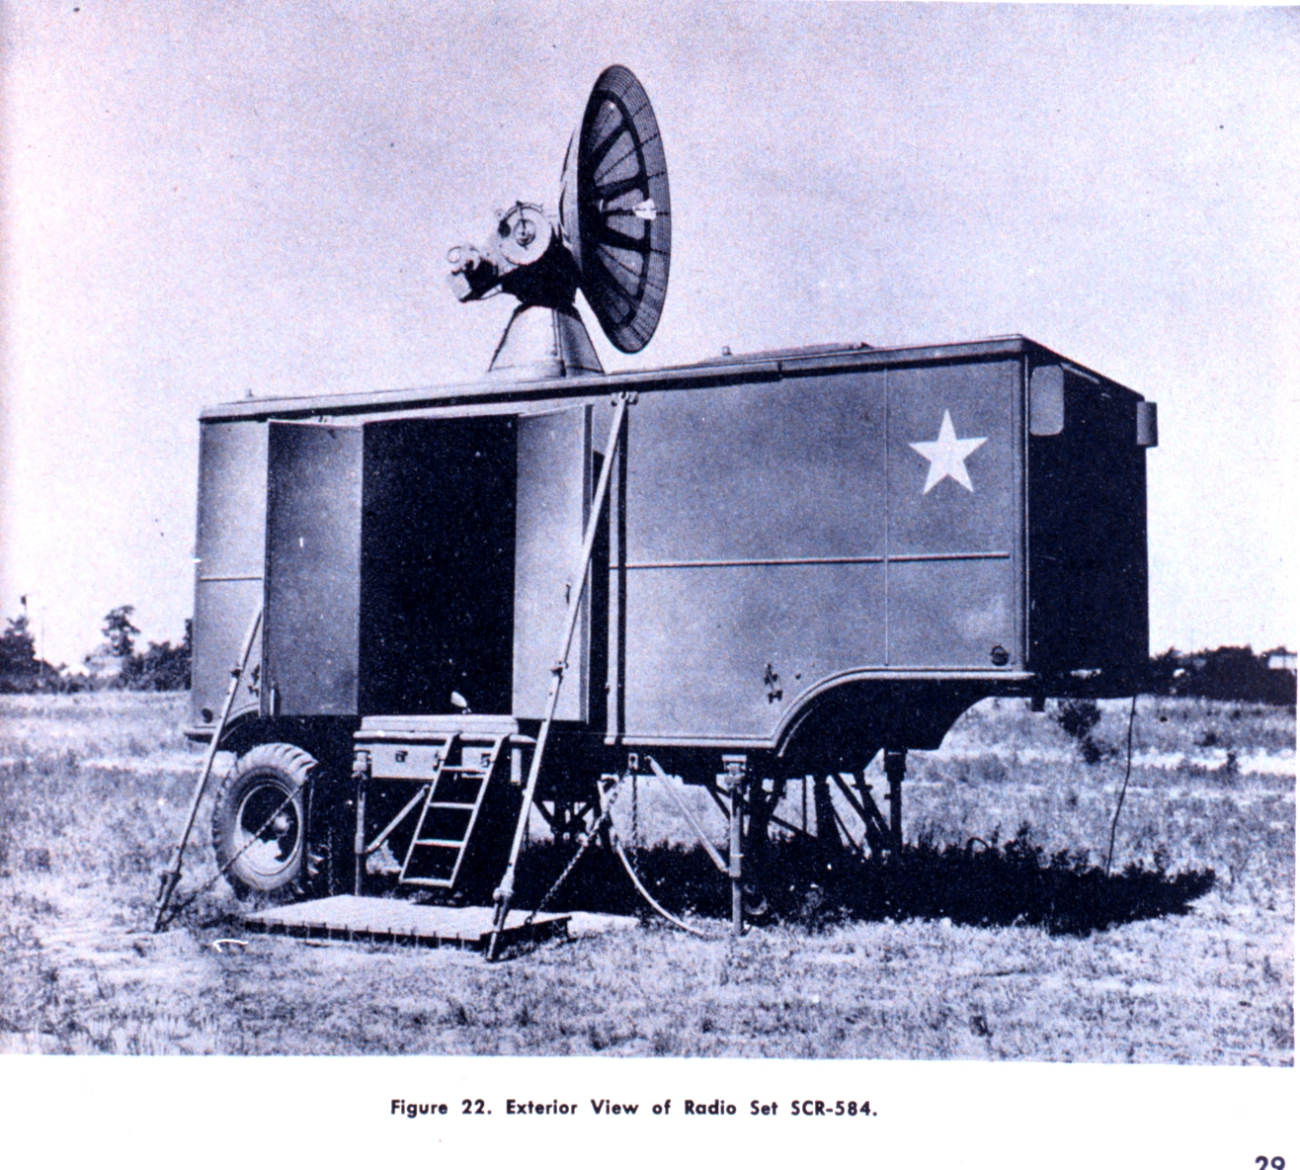 Exterior view of radio set SCR-584, a mobile radar unit